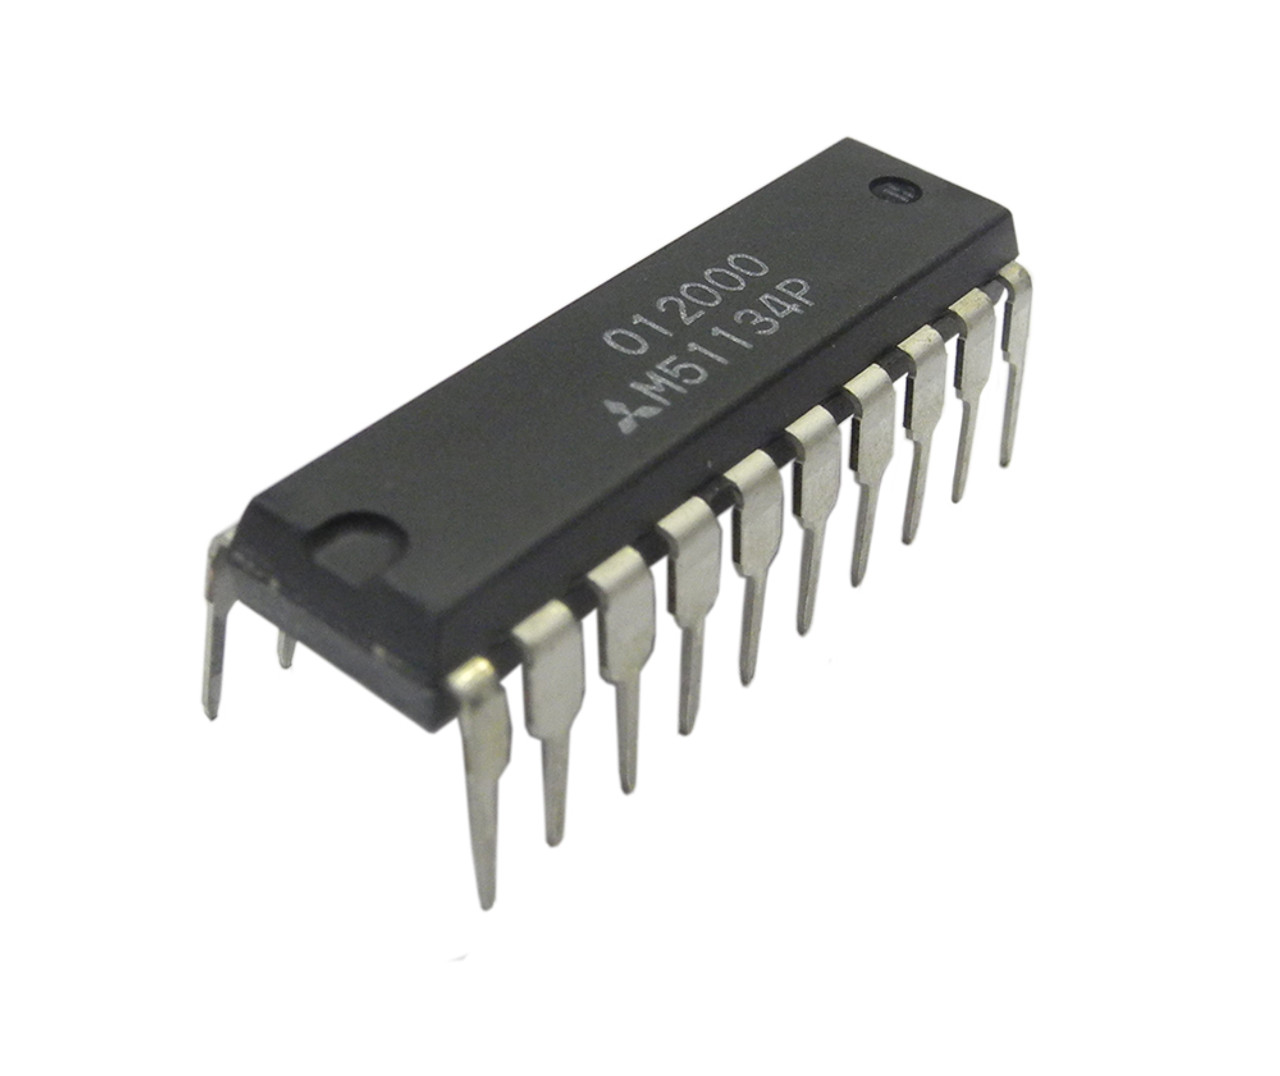 Source Original imported M51131L M51132L dual-channel electronic balance IC  chip ZIP-14 M51521AL M51521L M51131L on m.